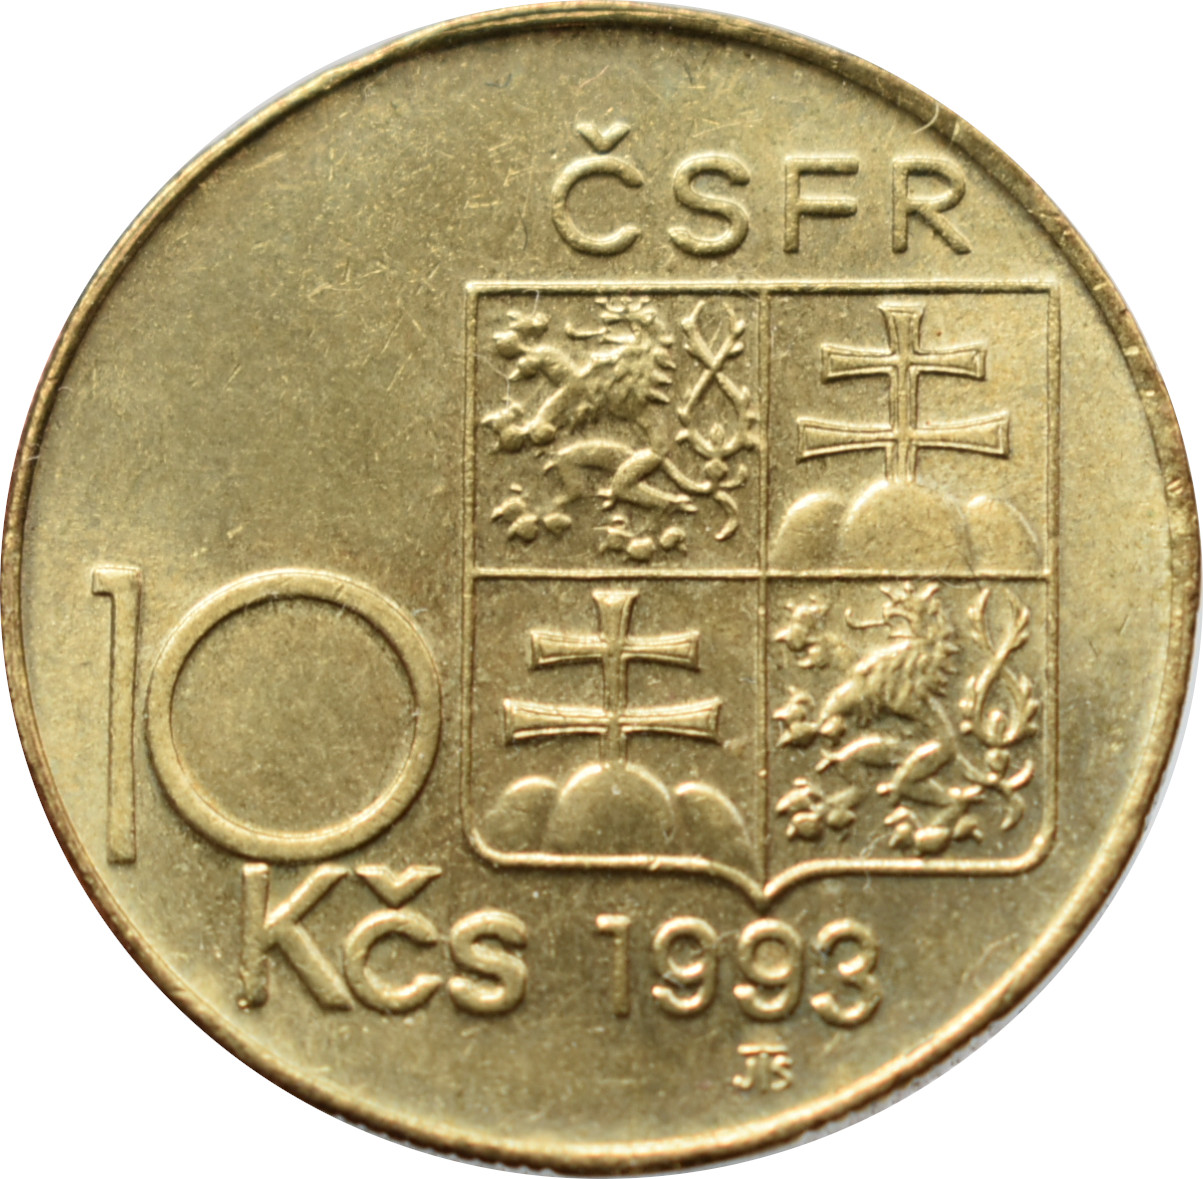 ČSFR 10 Kčs 1993